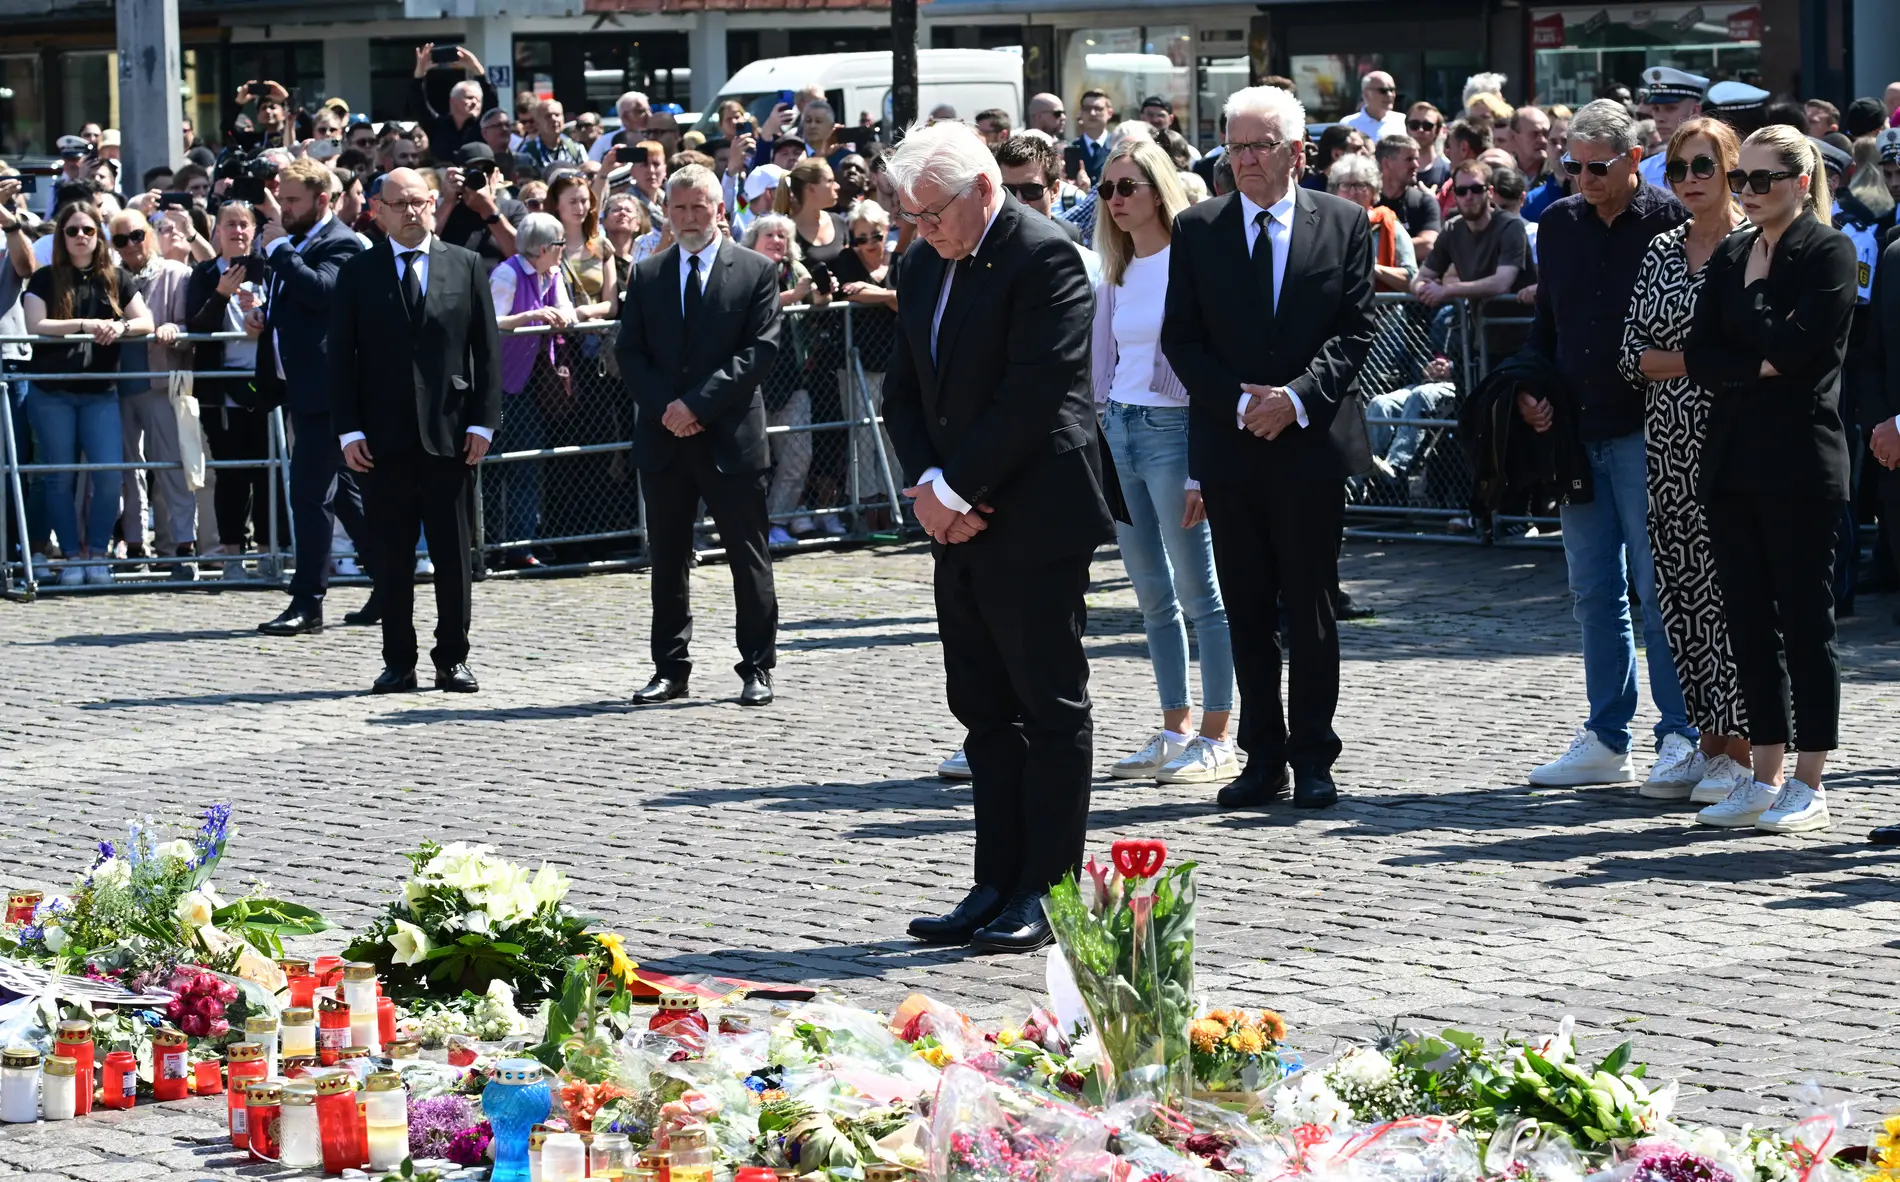 Frank-Walter Steinmeier legt auf dem Mannheimer Marktplatz Trauerkranz nieder